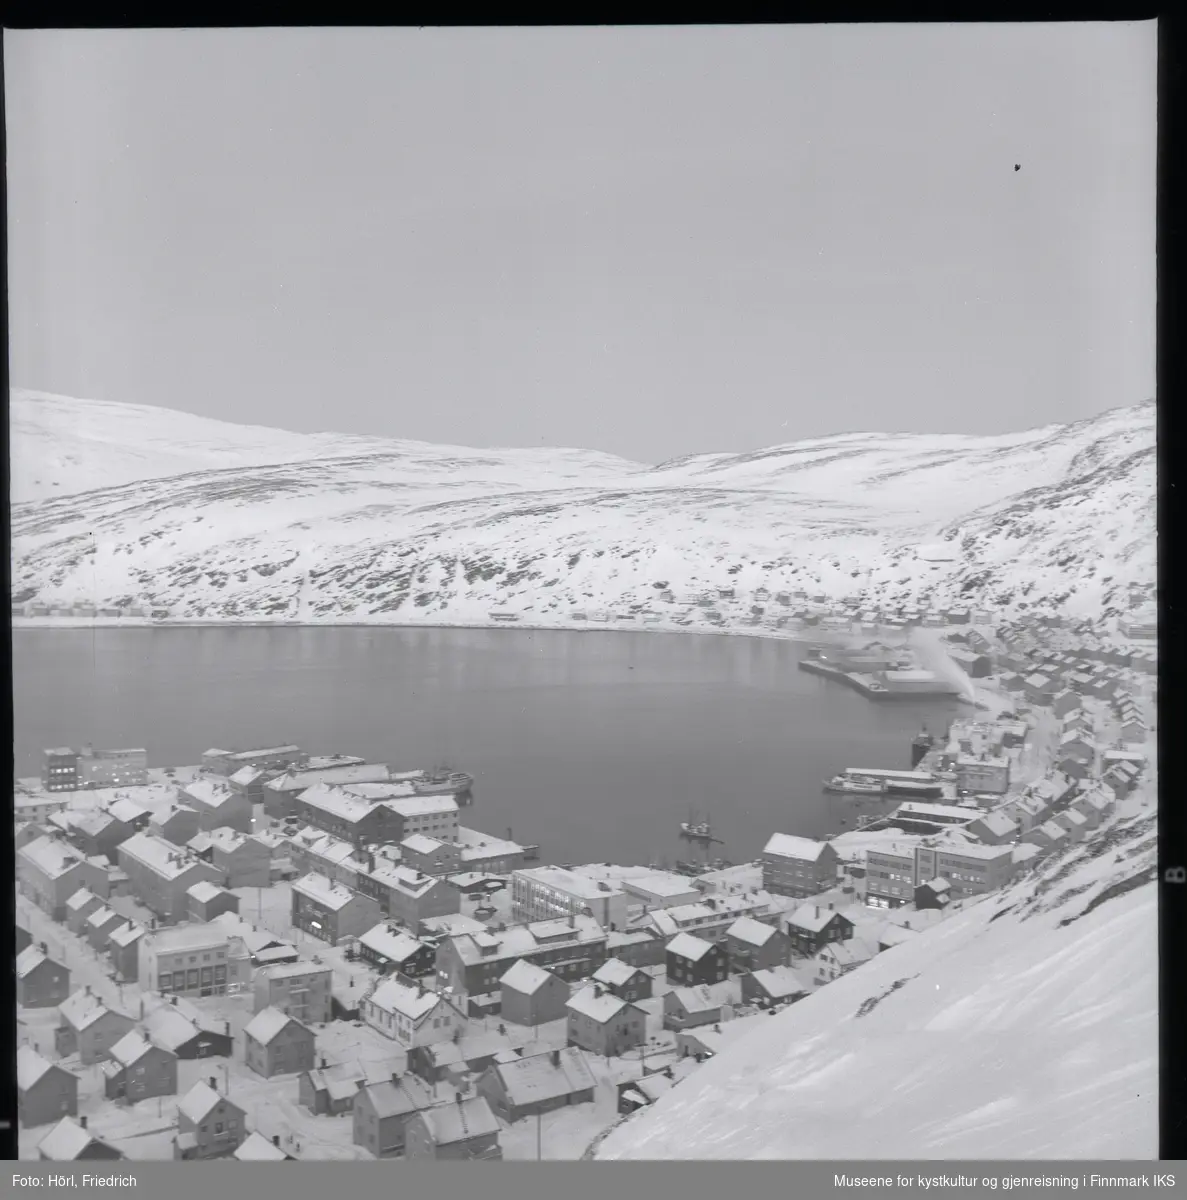 Utsikt over Hammerfest sentrum fra Salenfjellet i vinteren 1957/1958. Mesteparten av byen er gjenreist og man ser mange sentrale bygg som kommunehuset, Handelshuset Nissen, rådhuset, bankbygget, Findusfabrikken og Hauans materialhandel. I bakgrunnen ligger bydelen Molla og det snødekkede fjellandskapet.